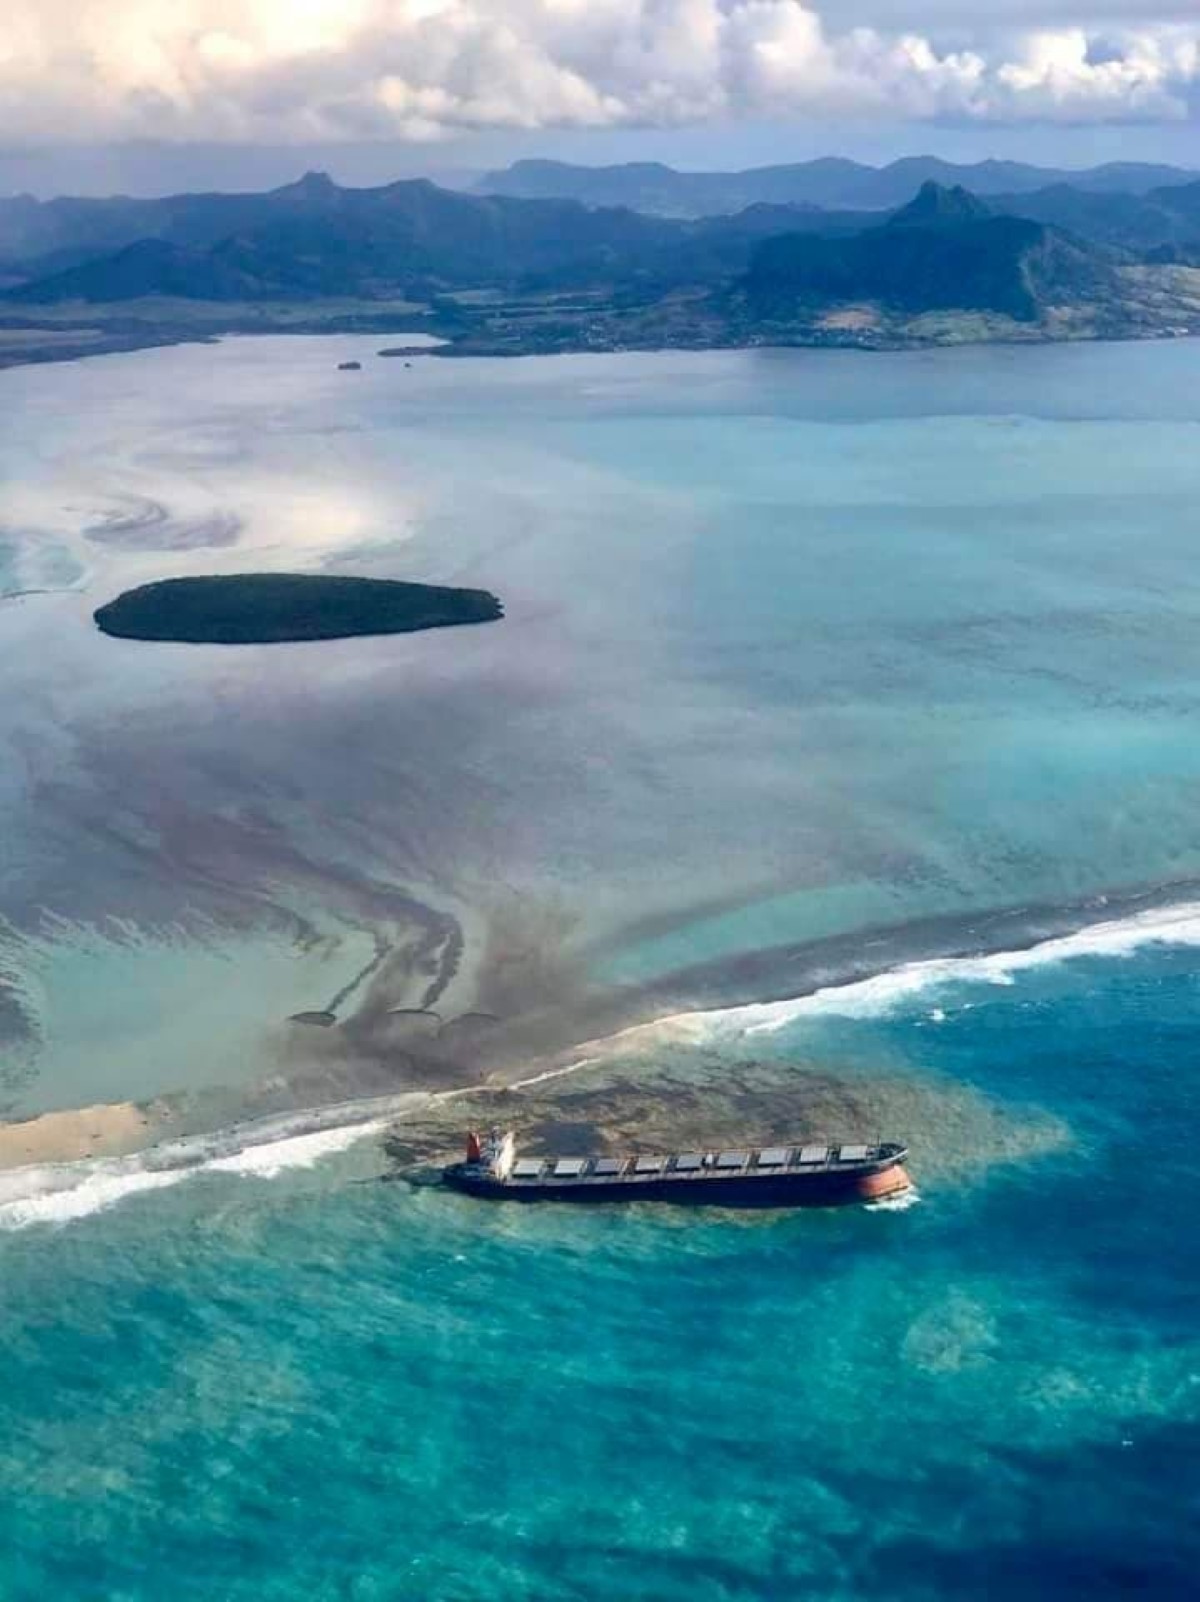 Marée noire sur l’Ile Maurice, un désastre écologique qui fait le tour du monde